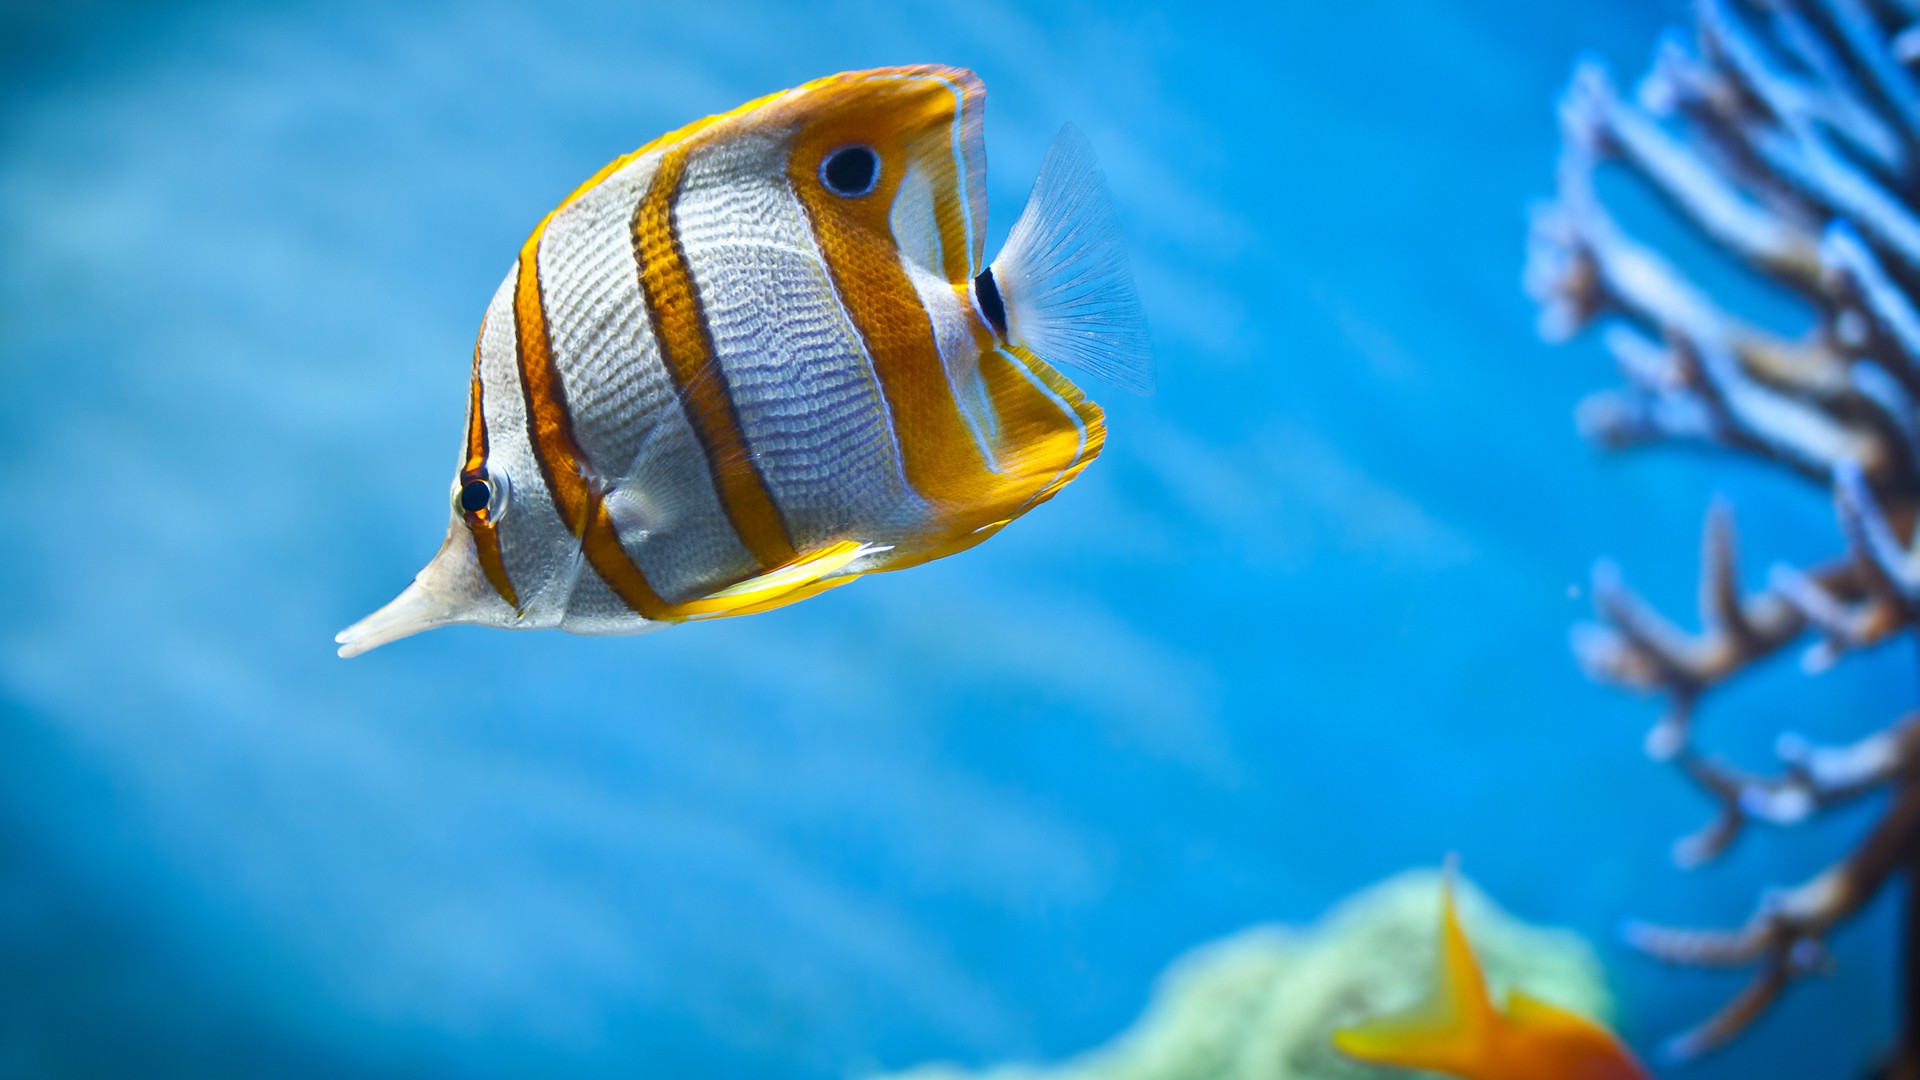 Sea striped fish